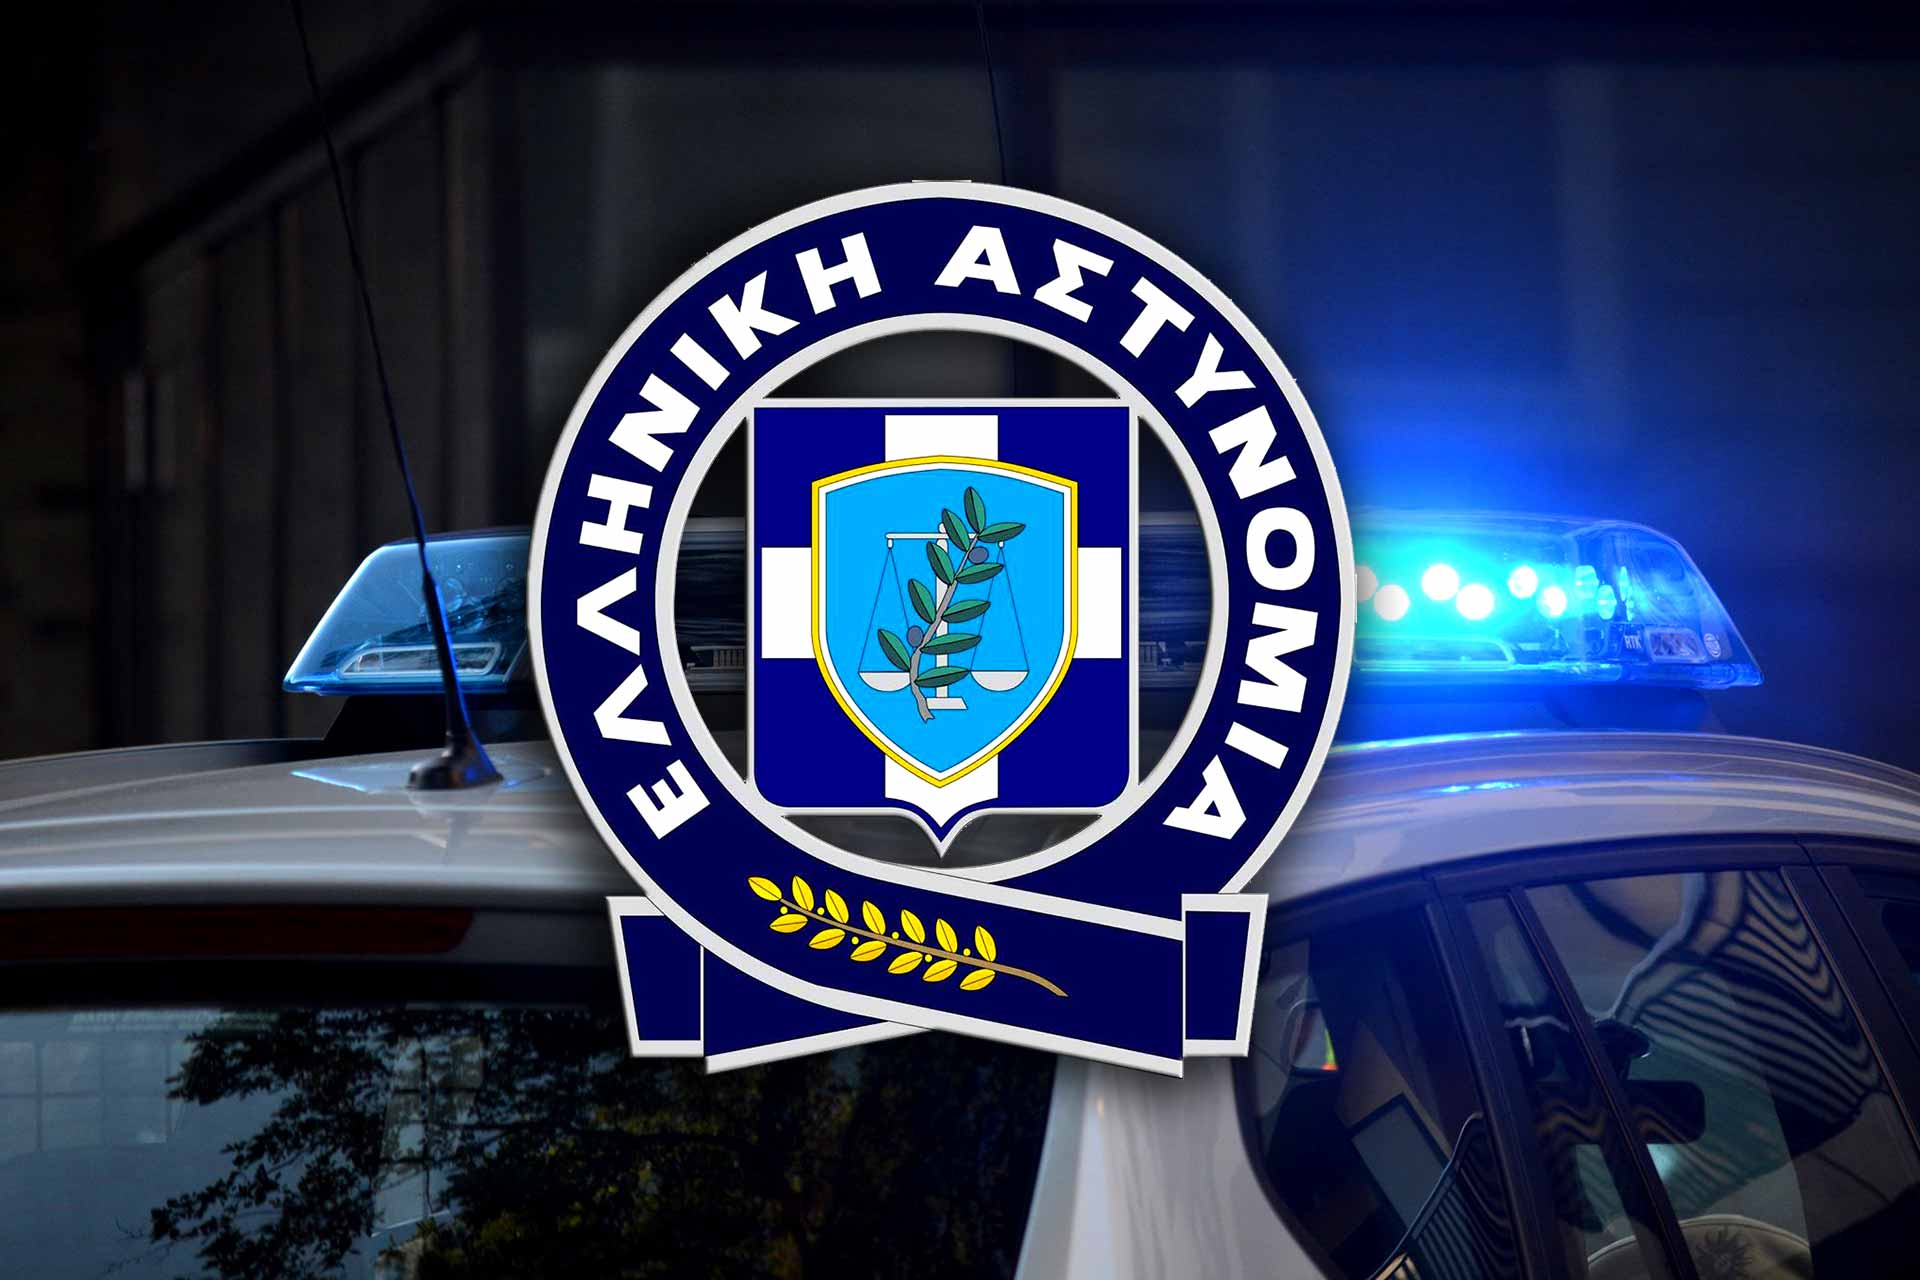 Συνελήφθησαν από αστυνομικούς της Διεύθυνσης Αστυνομίας Καστοριάς σε περιοχές της Θεσσαλονίκης -3- ημεδαποί για διακίνηση ναρκωτικών ουσιών και για παράβαση της νομοθεσίας περί όπλων